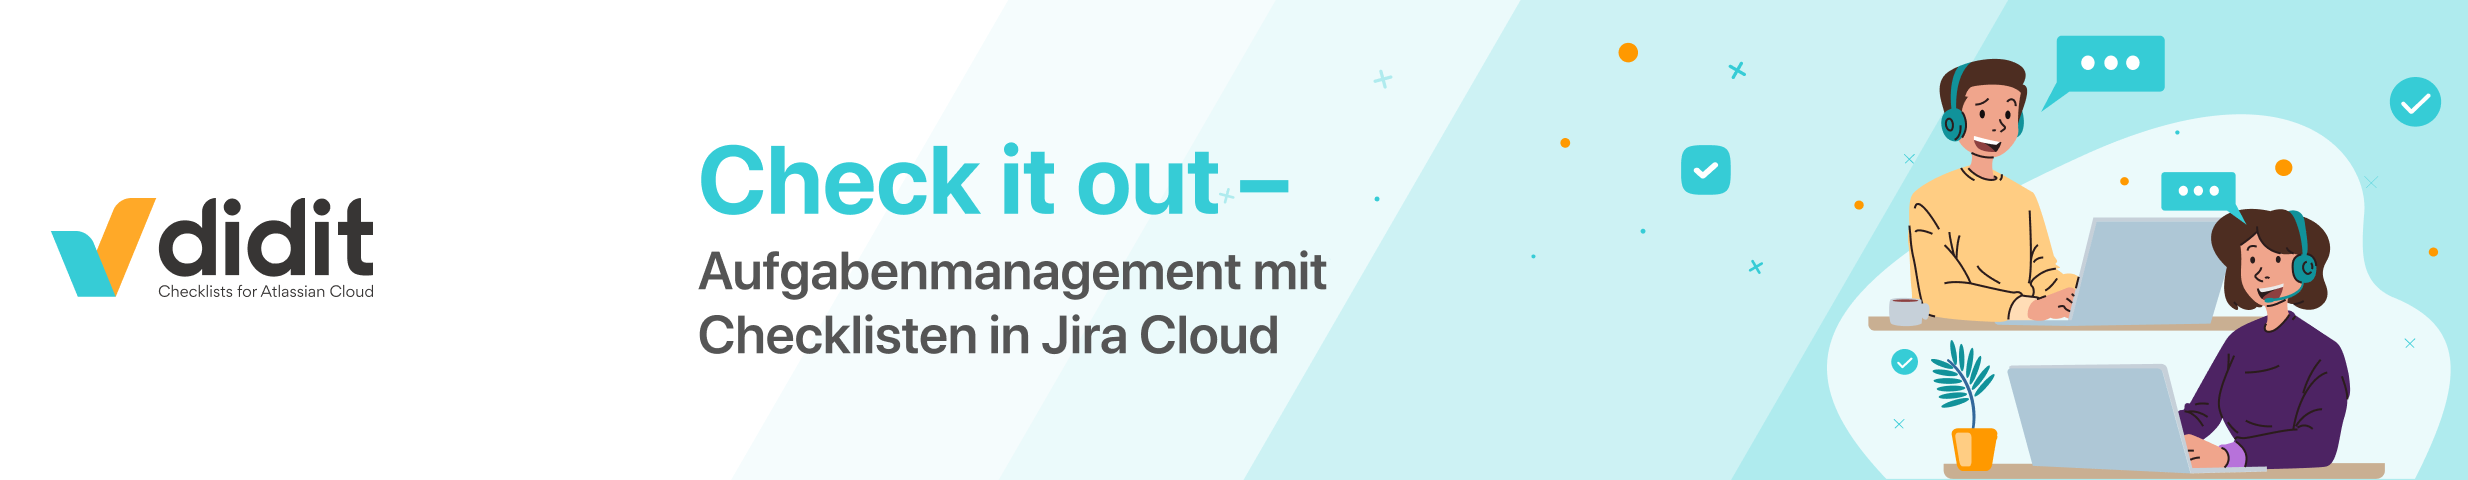 Header - Checklisten für das Aufgabenmanagement in Jira Cloud 